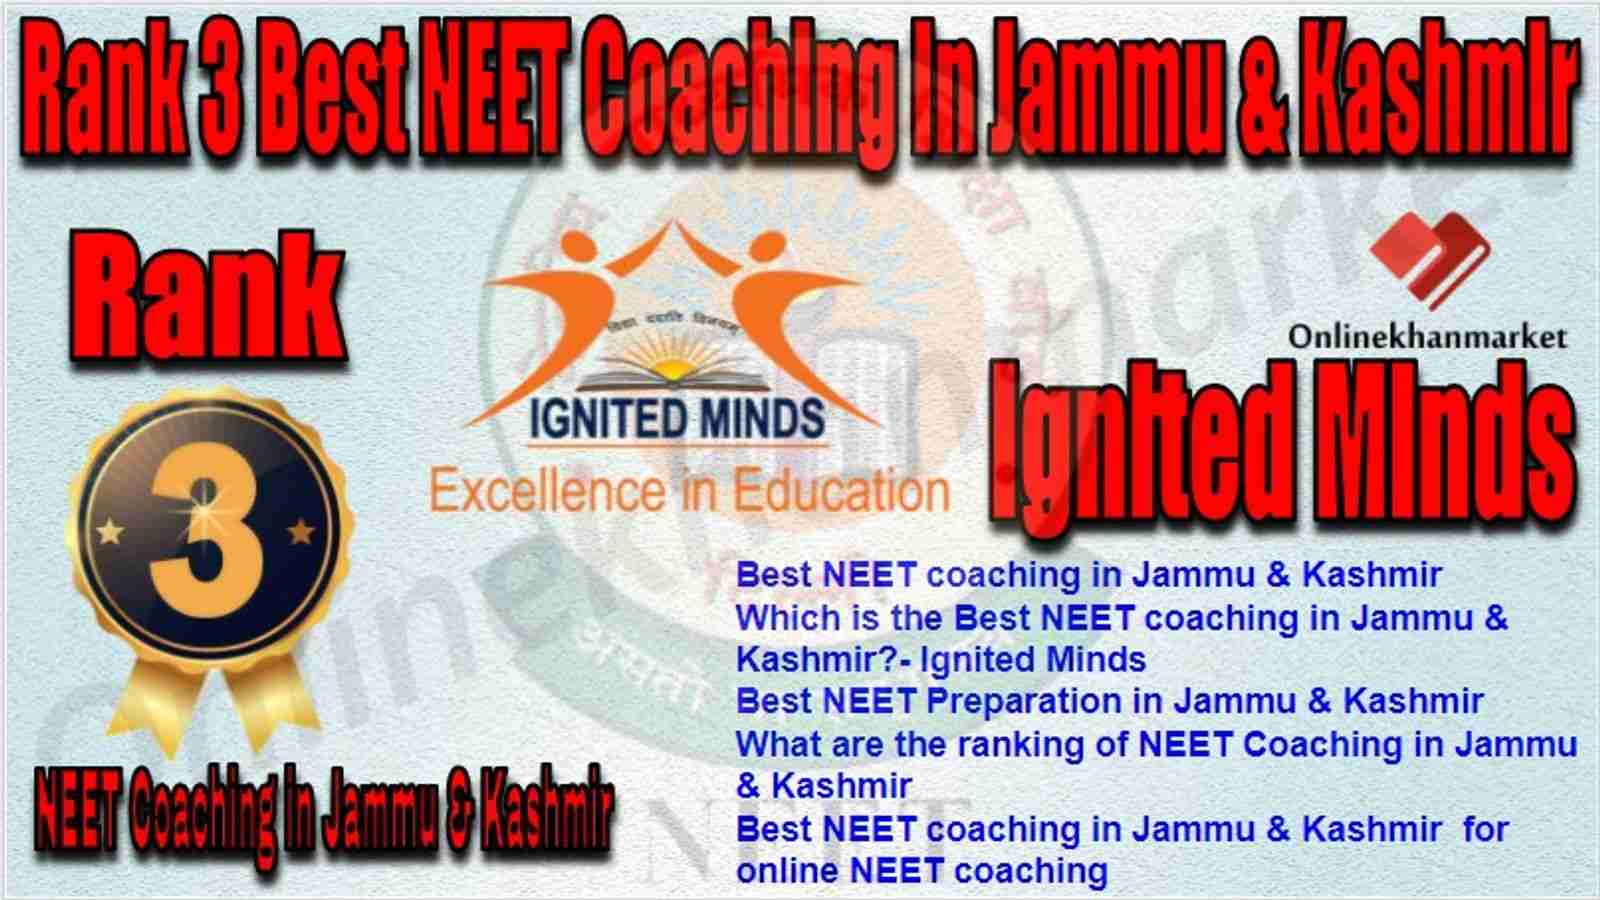 Rank 3 Best NEET Coaching in jammu &kashmir